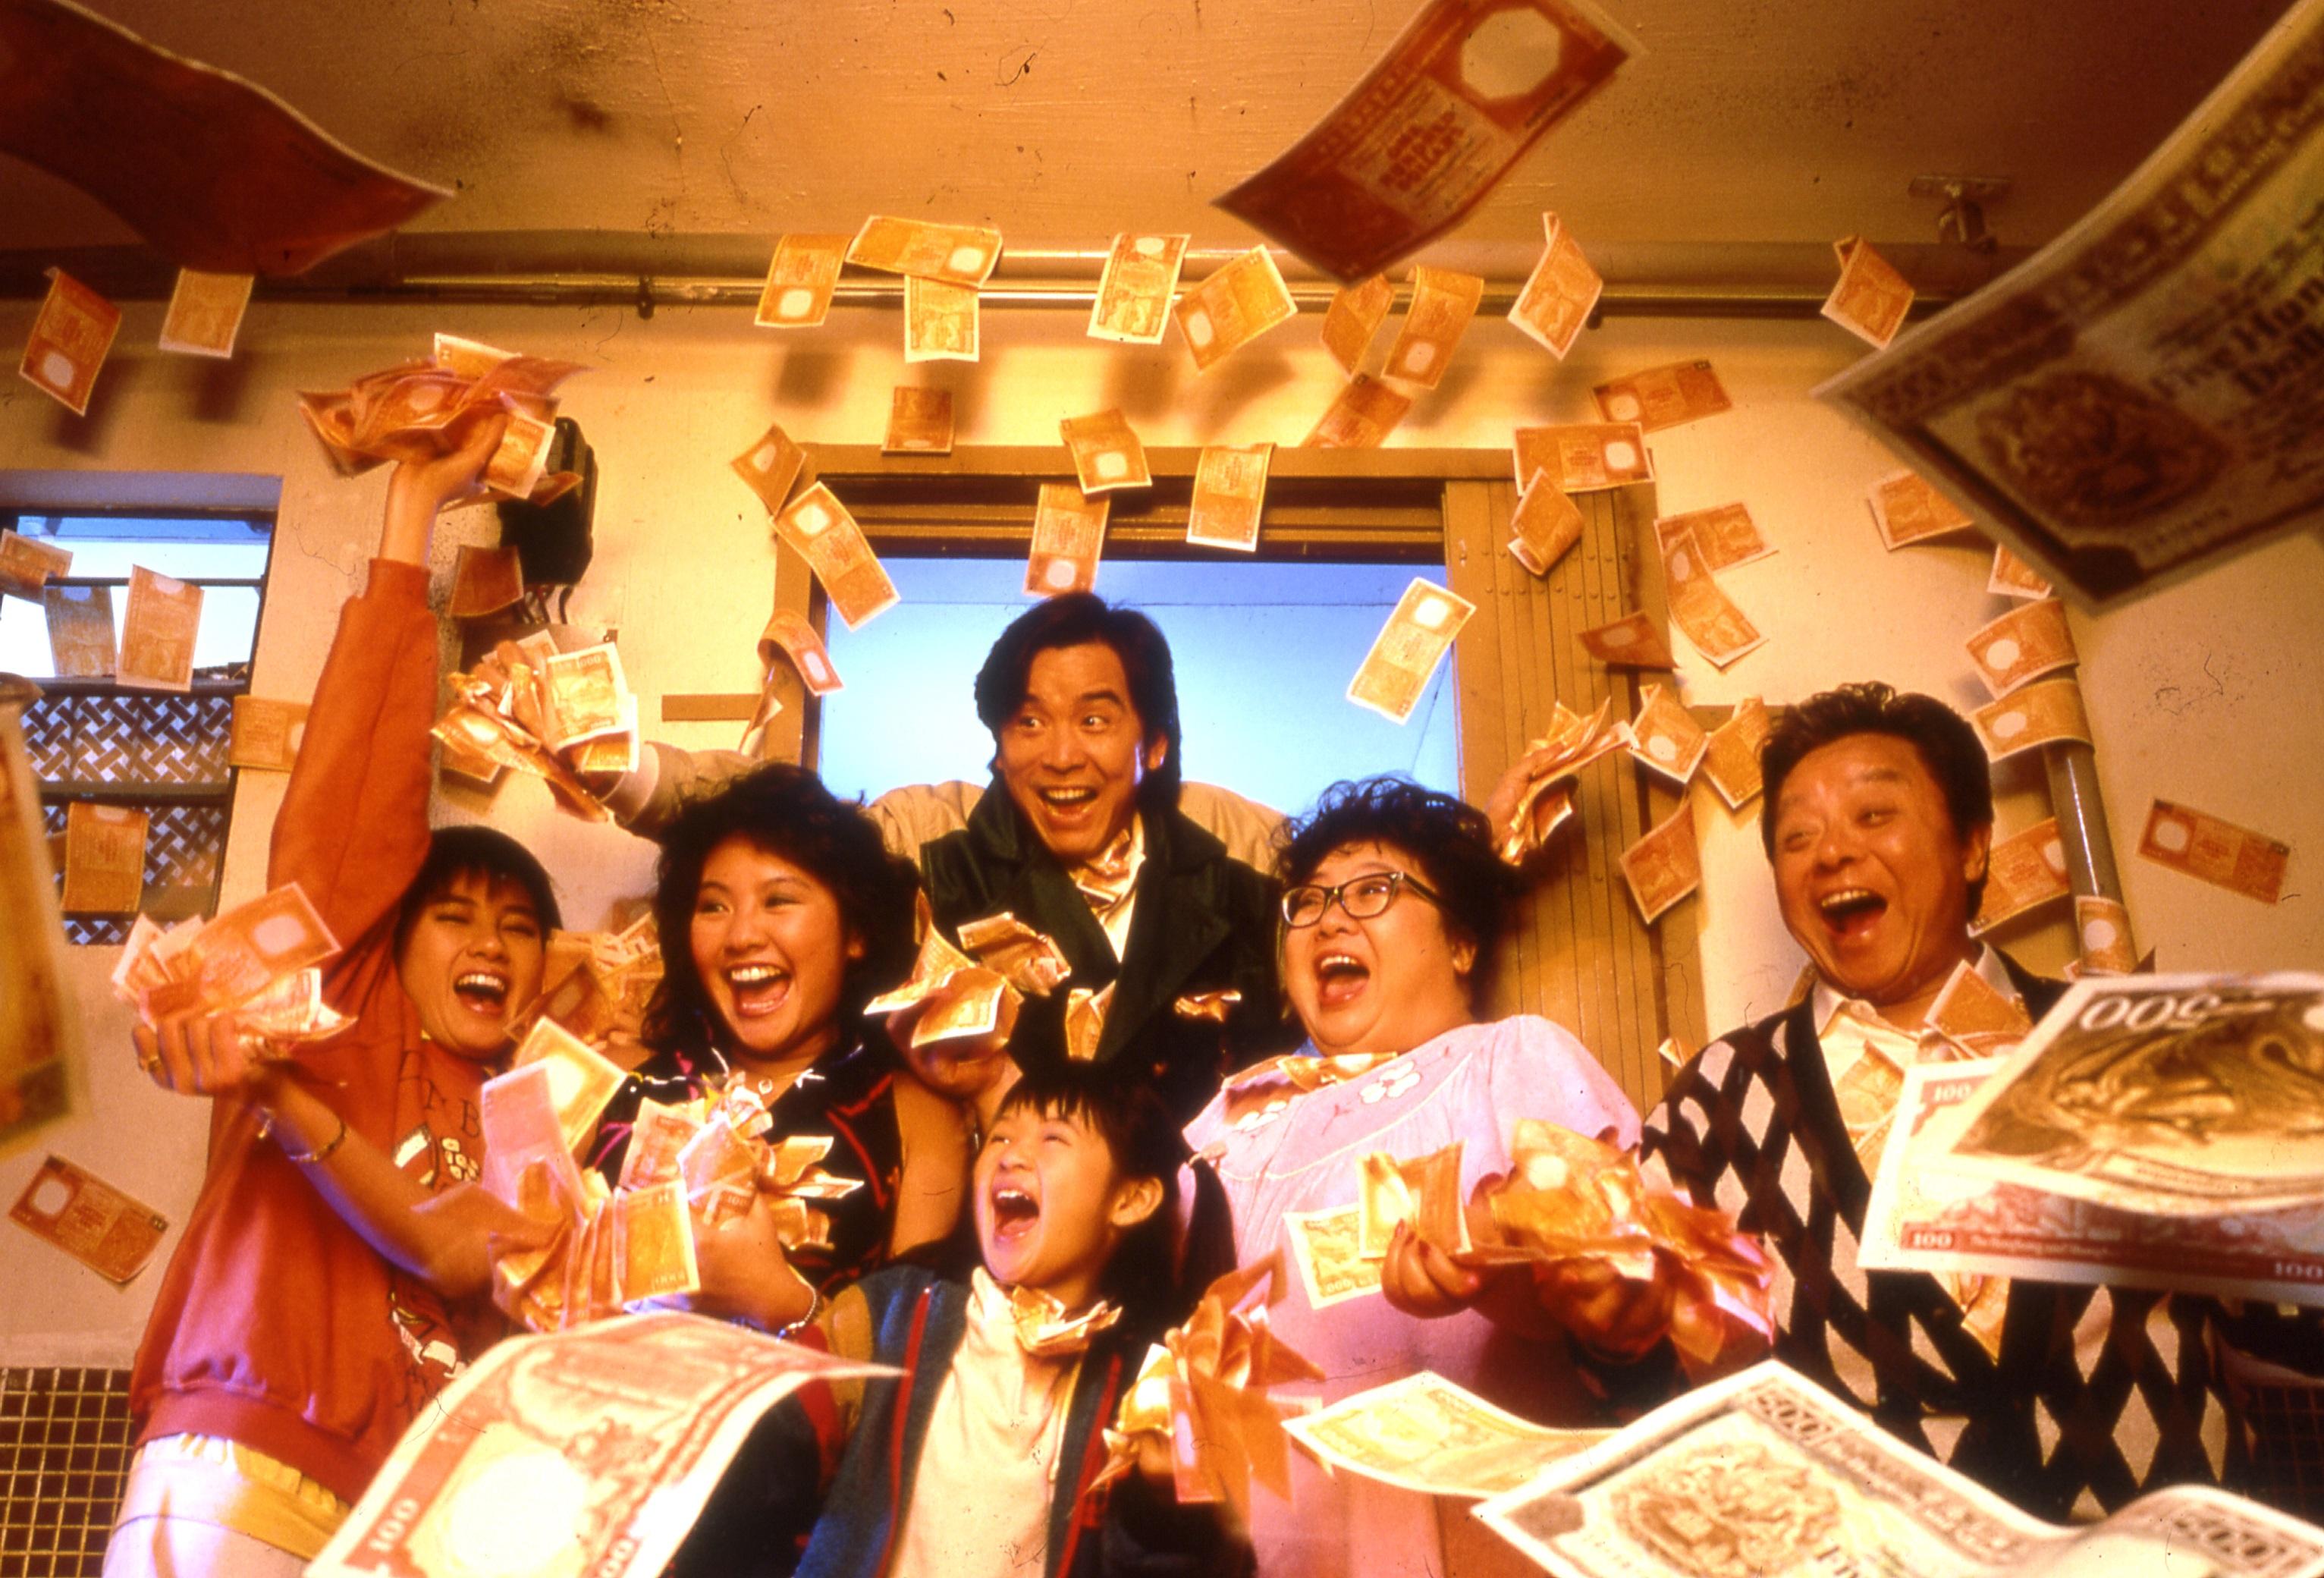 康乐及文化事务署香港电影资料馆（资料馆）精选三十部德宝电影公司的作品于七月三十日至十二月十八日在资料馆电影院放映，让观衆重温八、九十年代香港电影黄金时期的影片。图示《富贵逼人》（1987）剧照。